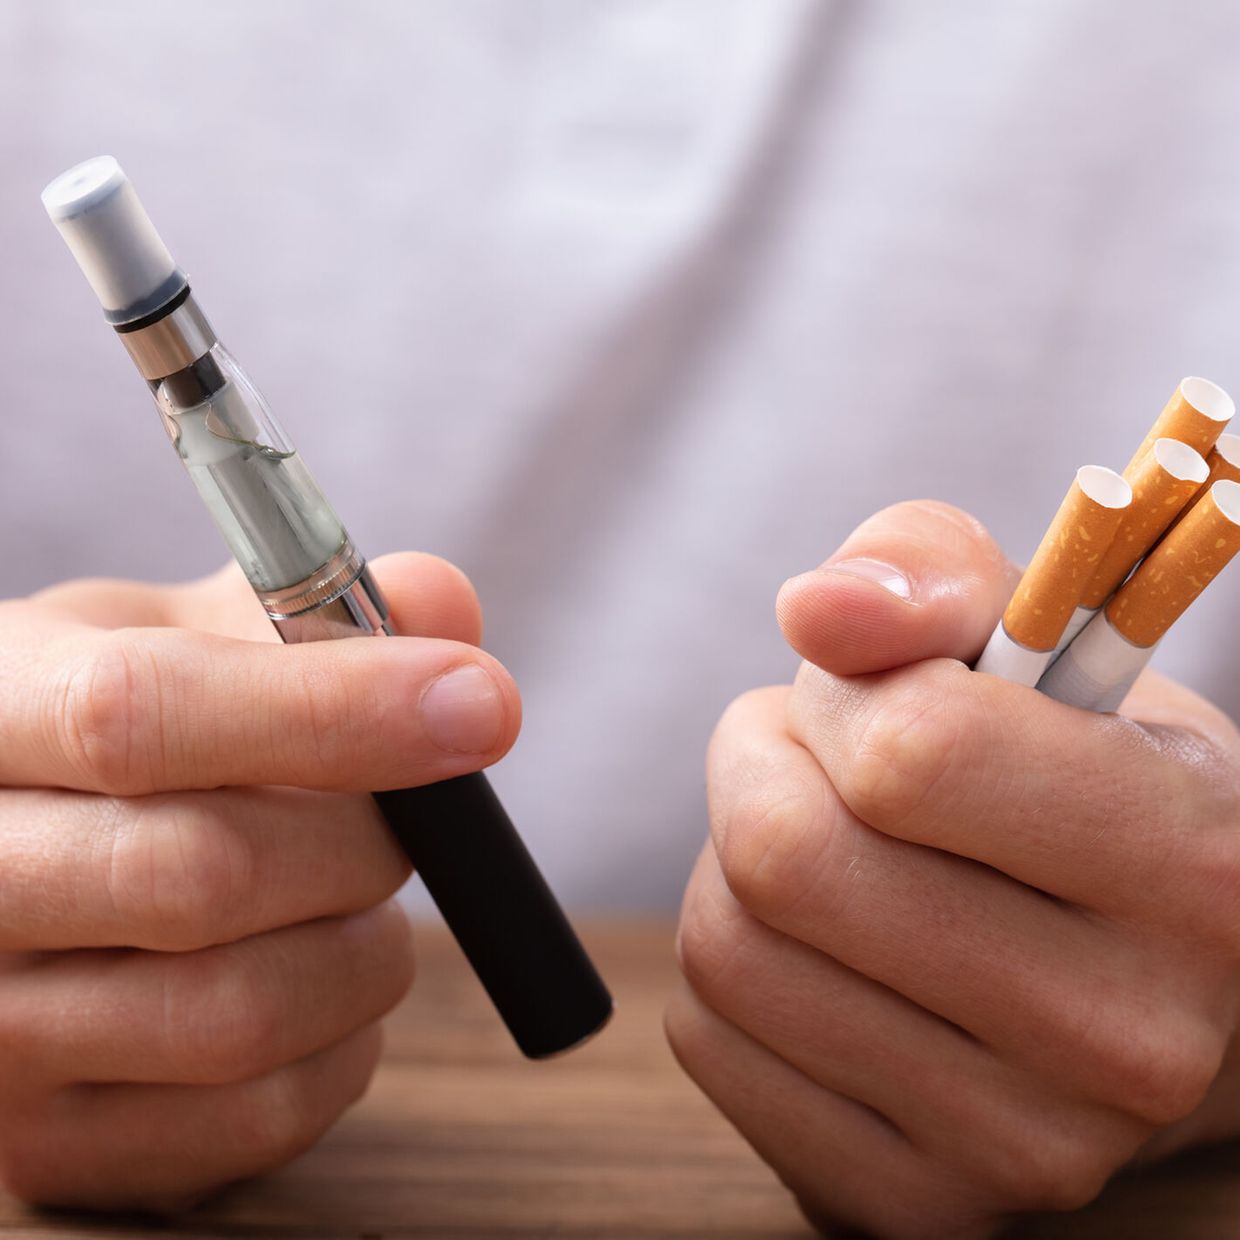 Wie E-Zigaretten stressen: Kardiologen sehen potenzielle